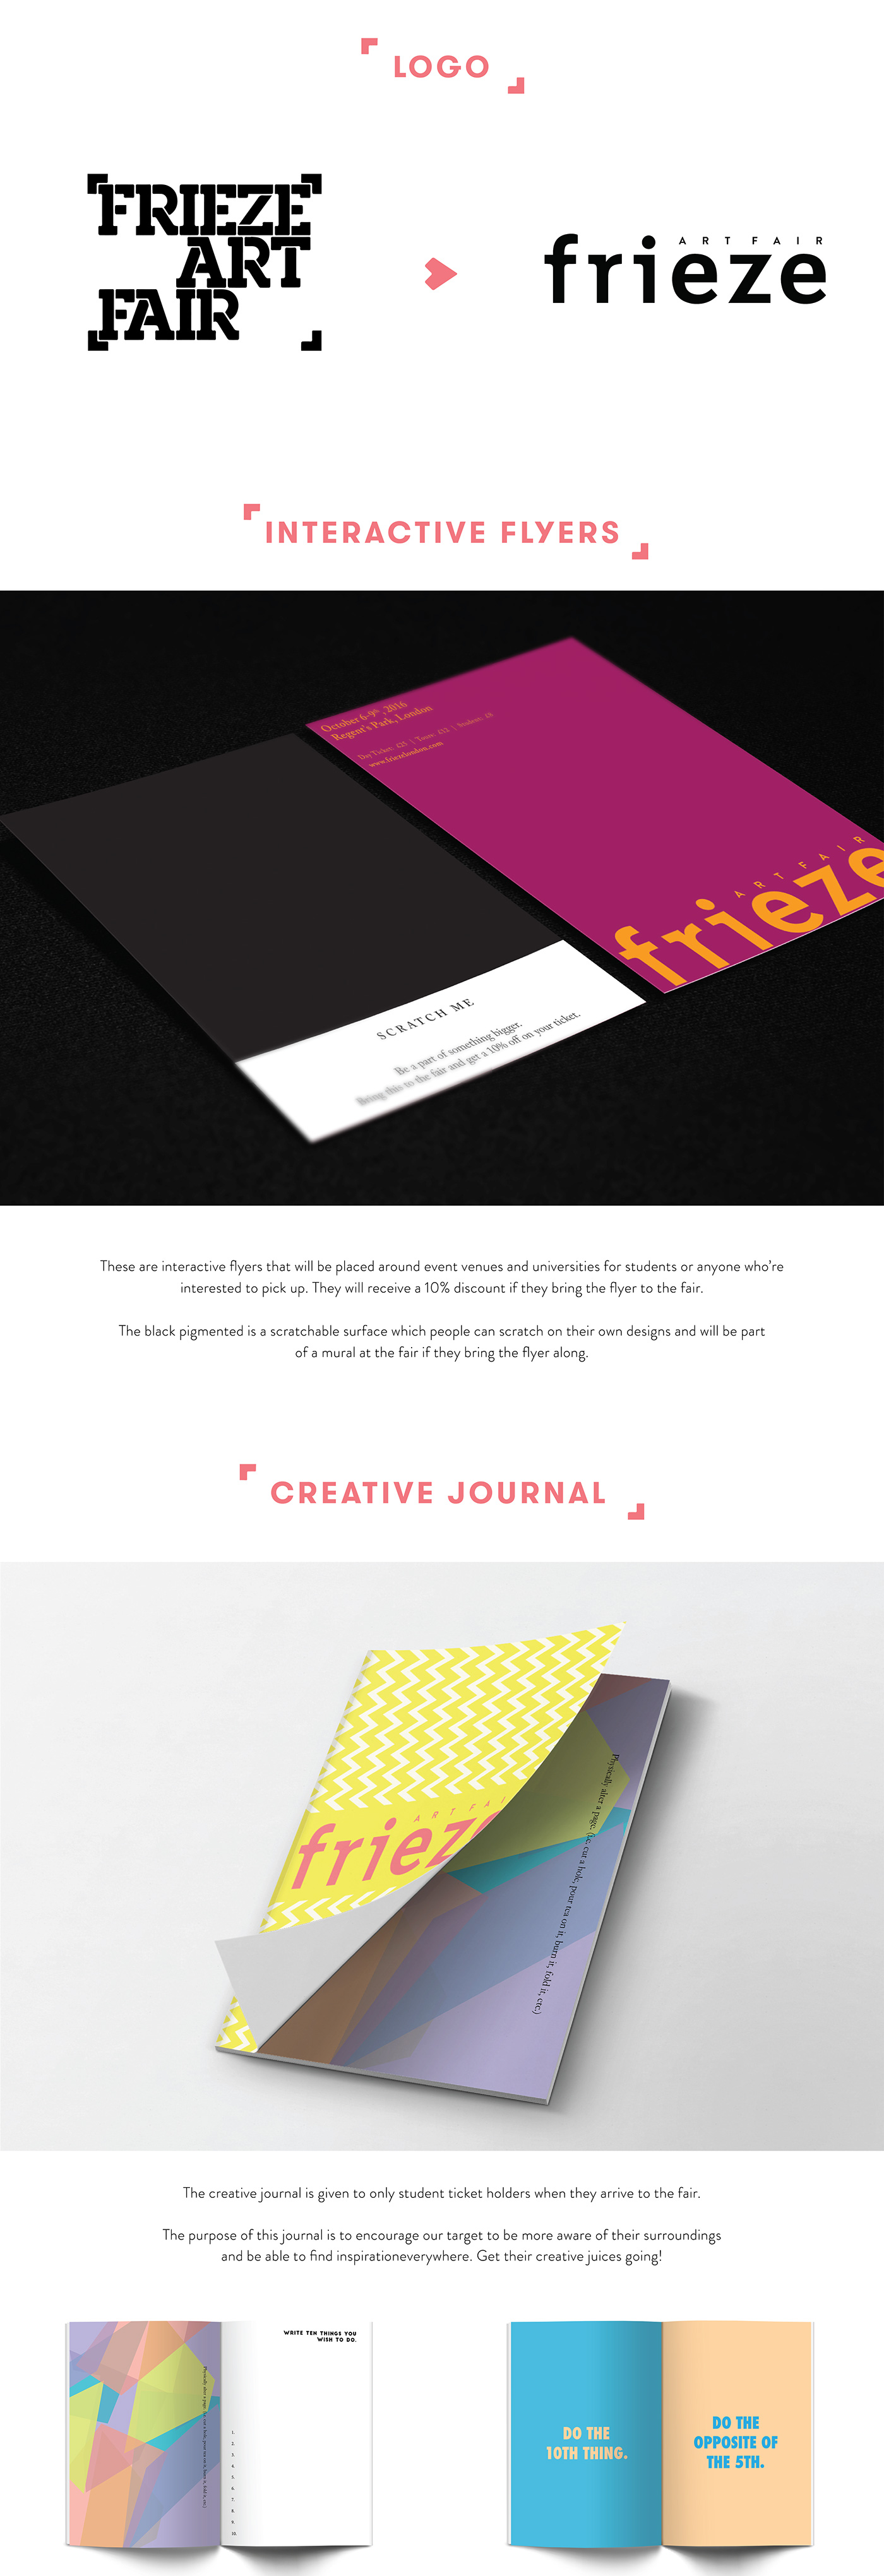 frieze frieze art fair Rebrand journal book design interactive strategy colors Patterns app